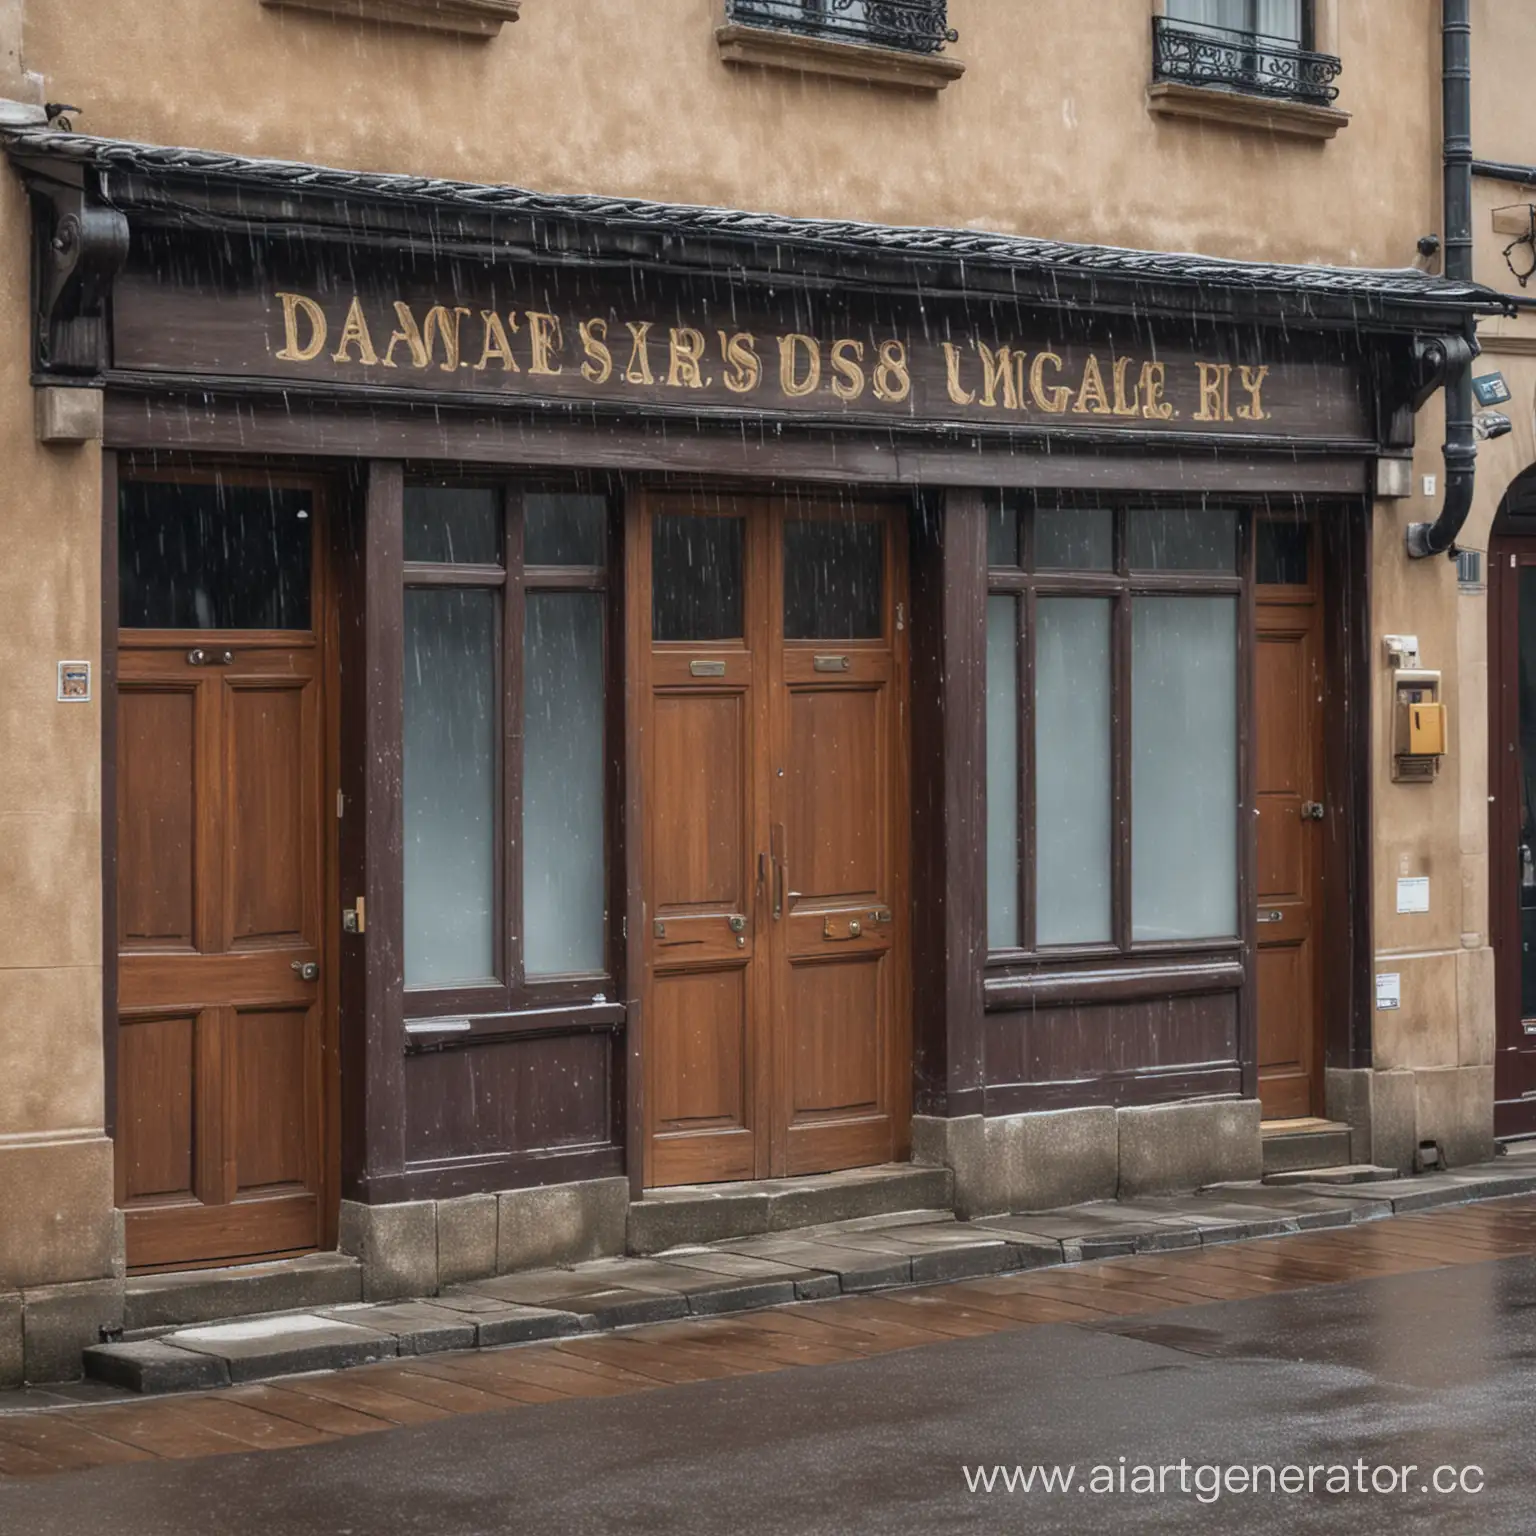 традиционный магазин с закрытыми дверями из-за непогоды